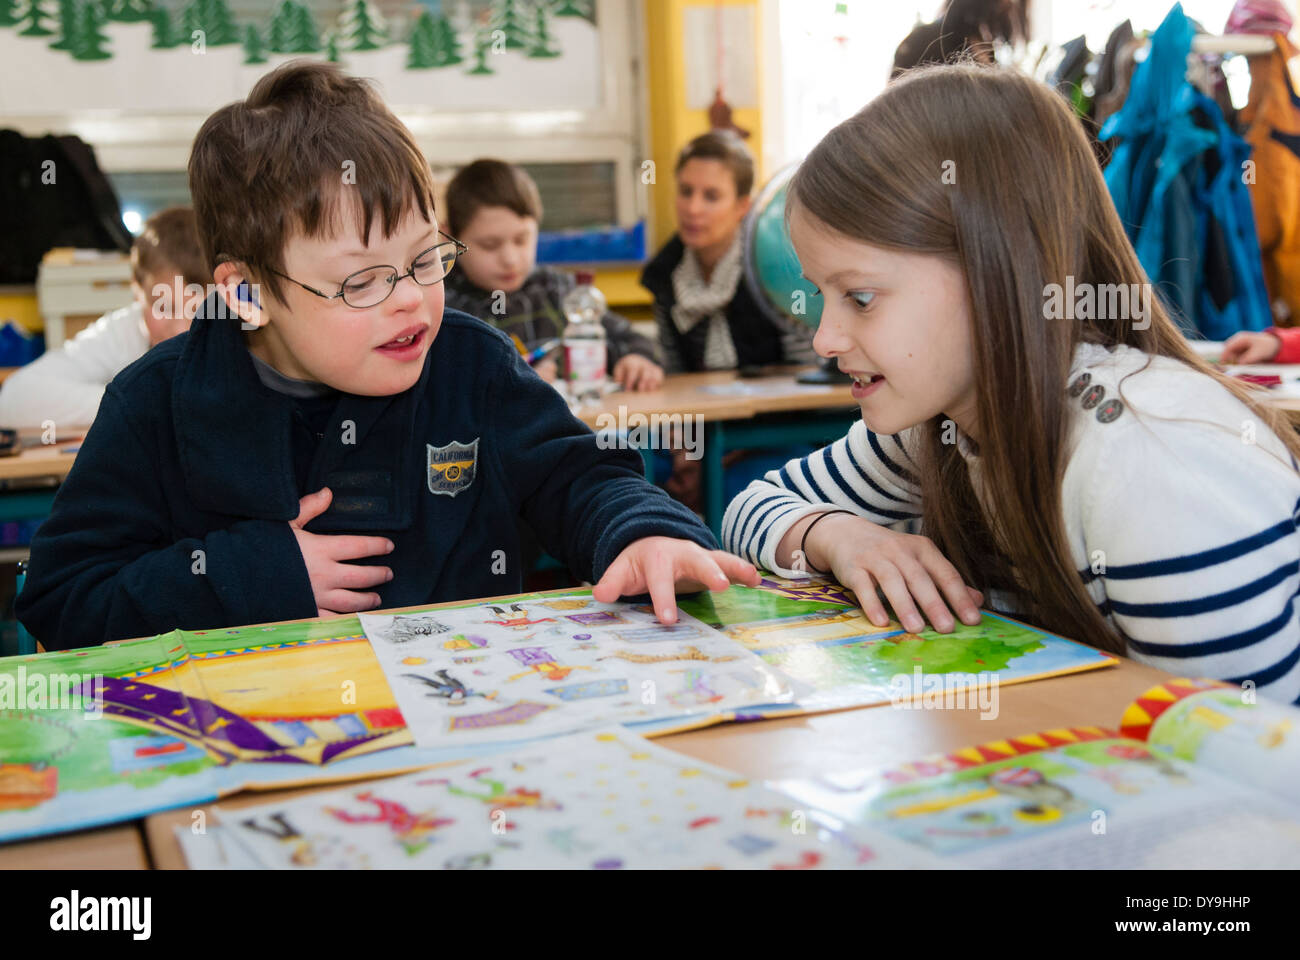 Nicht behinderte und behinderte Schüler (in diesem Fall ein Junge mit Down-Syndrom) lernen gemeinsam in der gleichen Klasse. Stockfoto